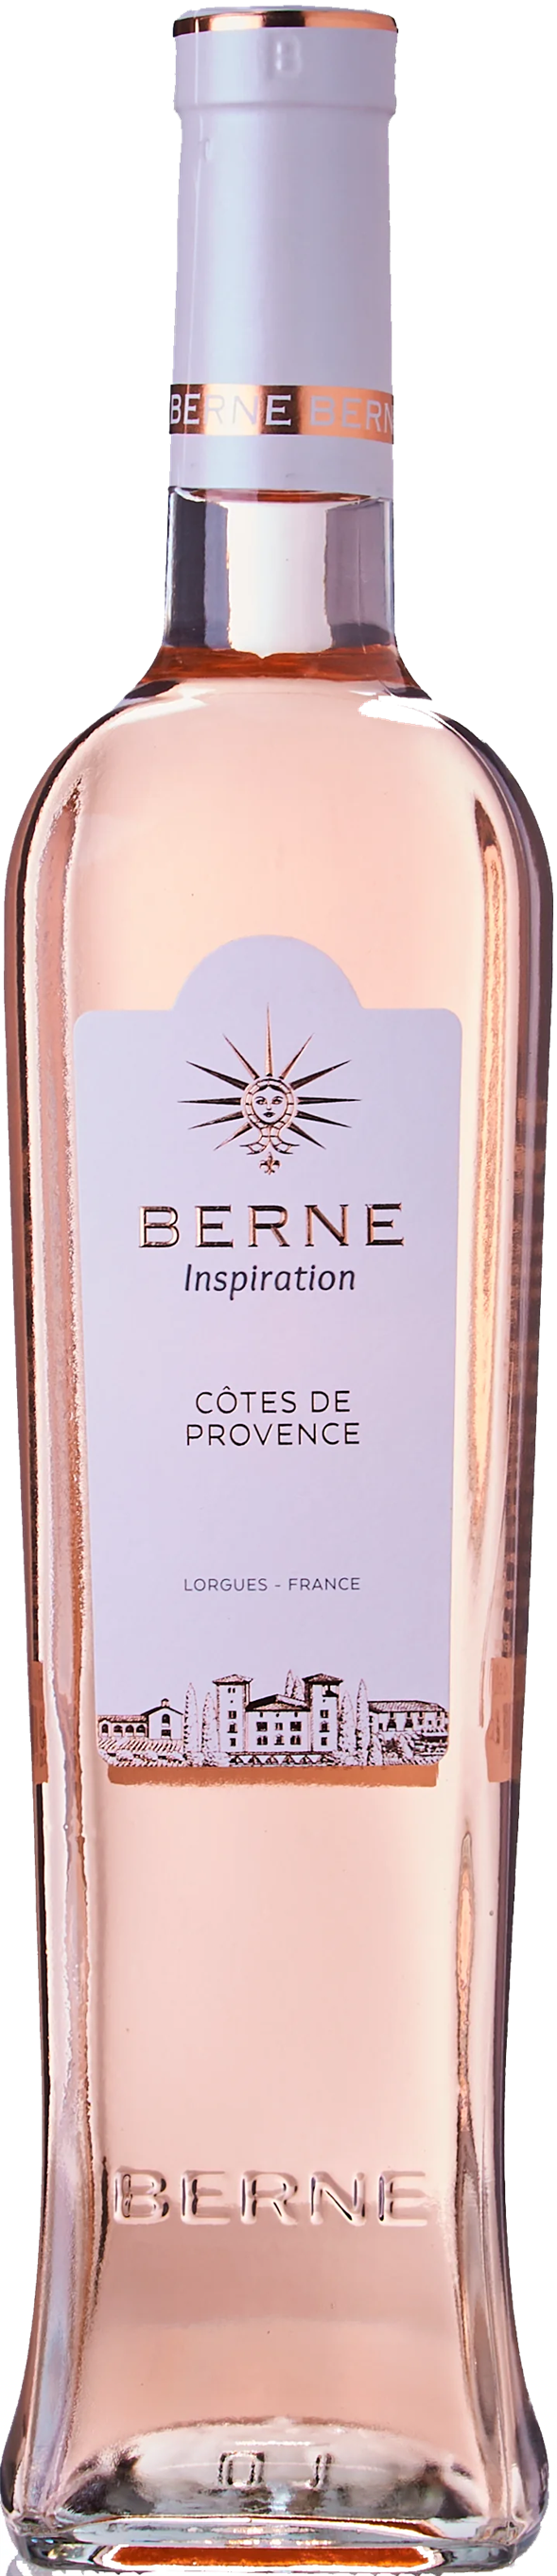 Chateau de Berne, Inspiration - Côtes de Provence Rosé 2020